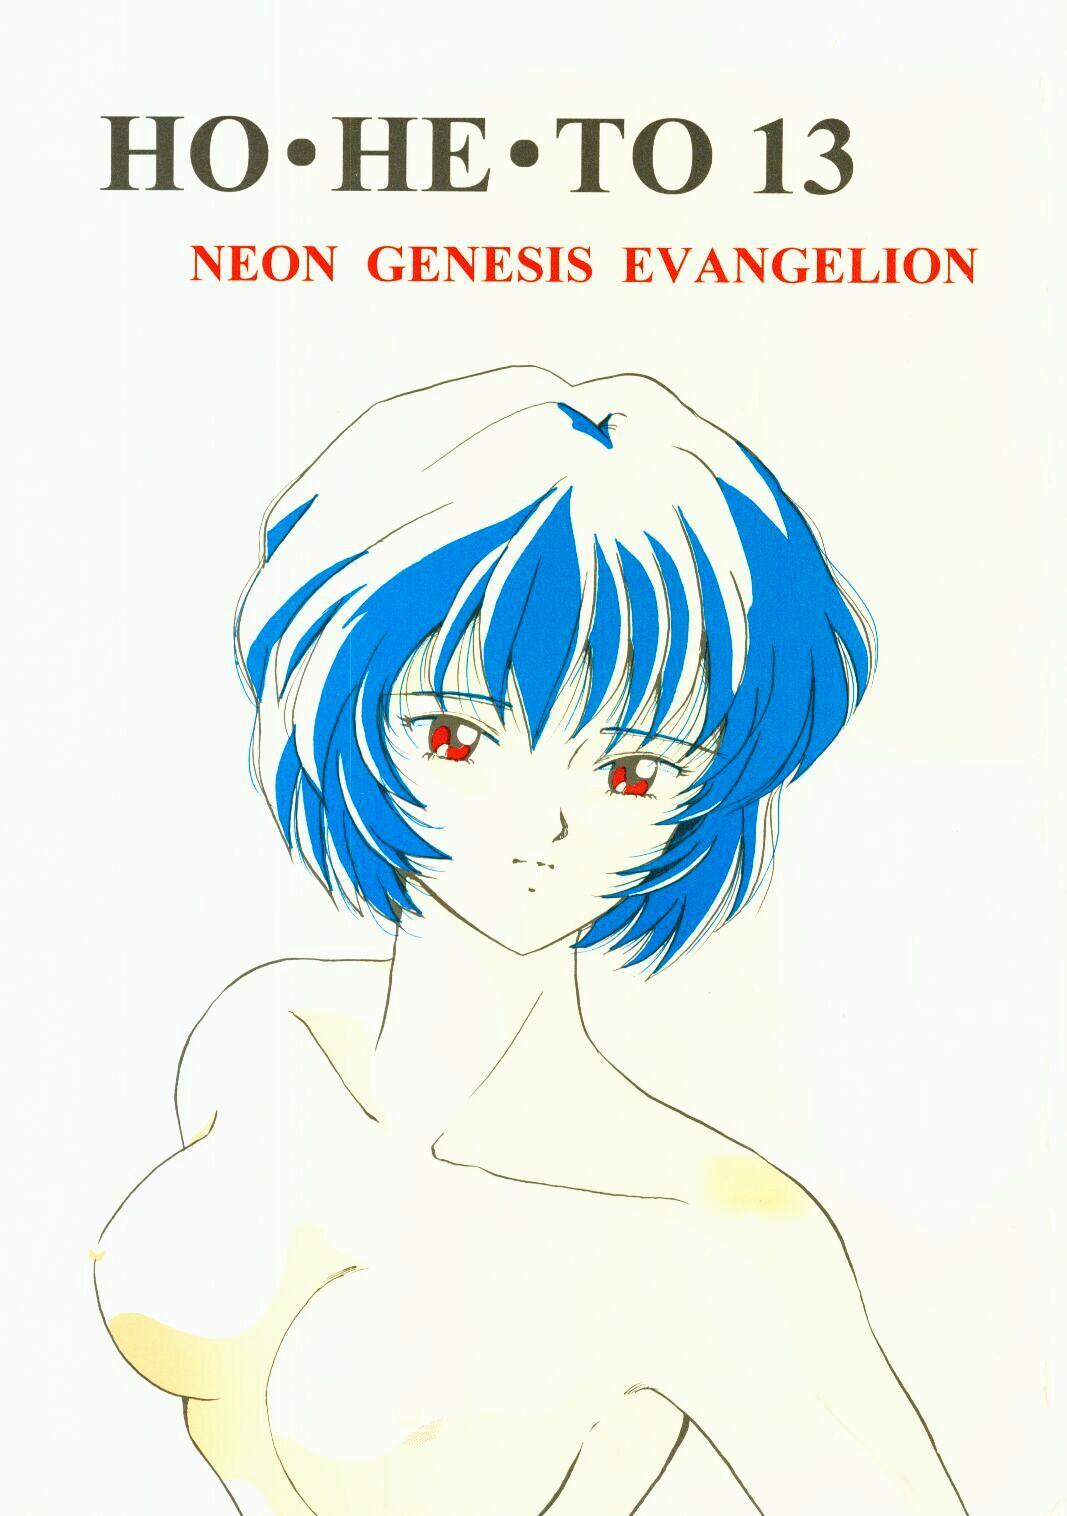 Leche (C50) [Studio Boxer (Shima Takashi, Taka) HOHETO 13 (Neon Genesis Evangelion) - Neon genesis evangelion Extreme - Picture 1